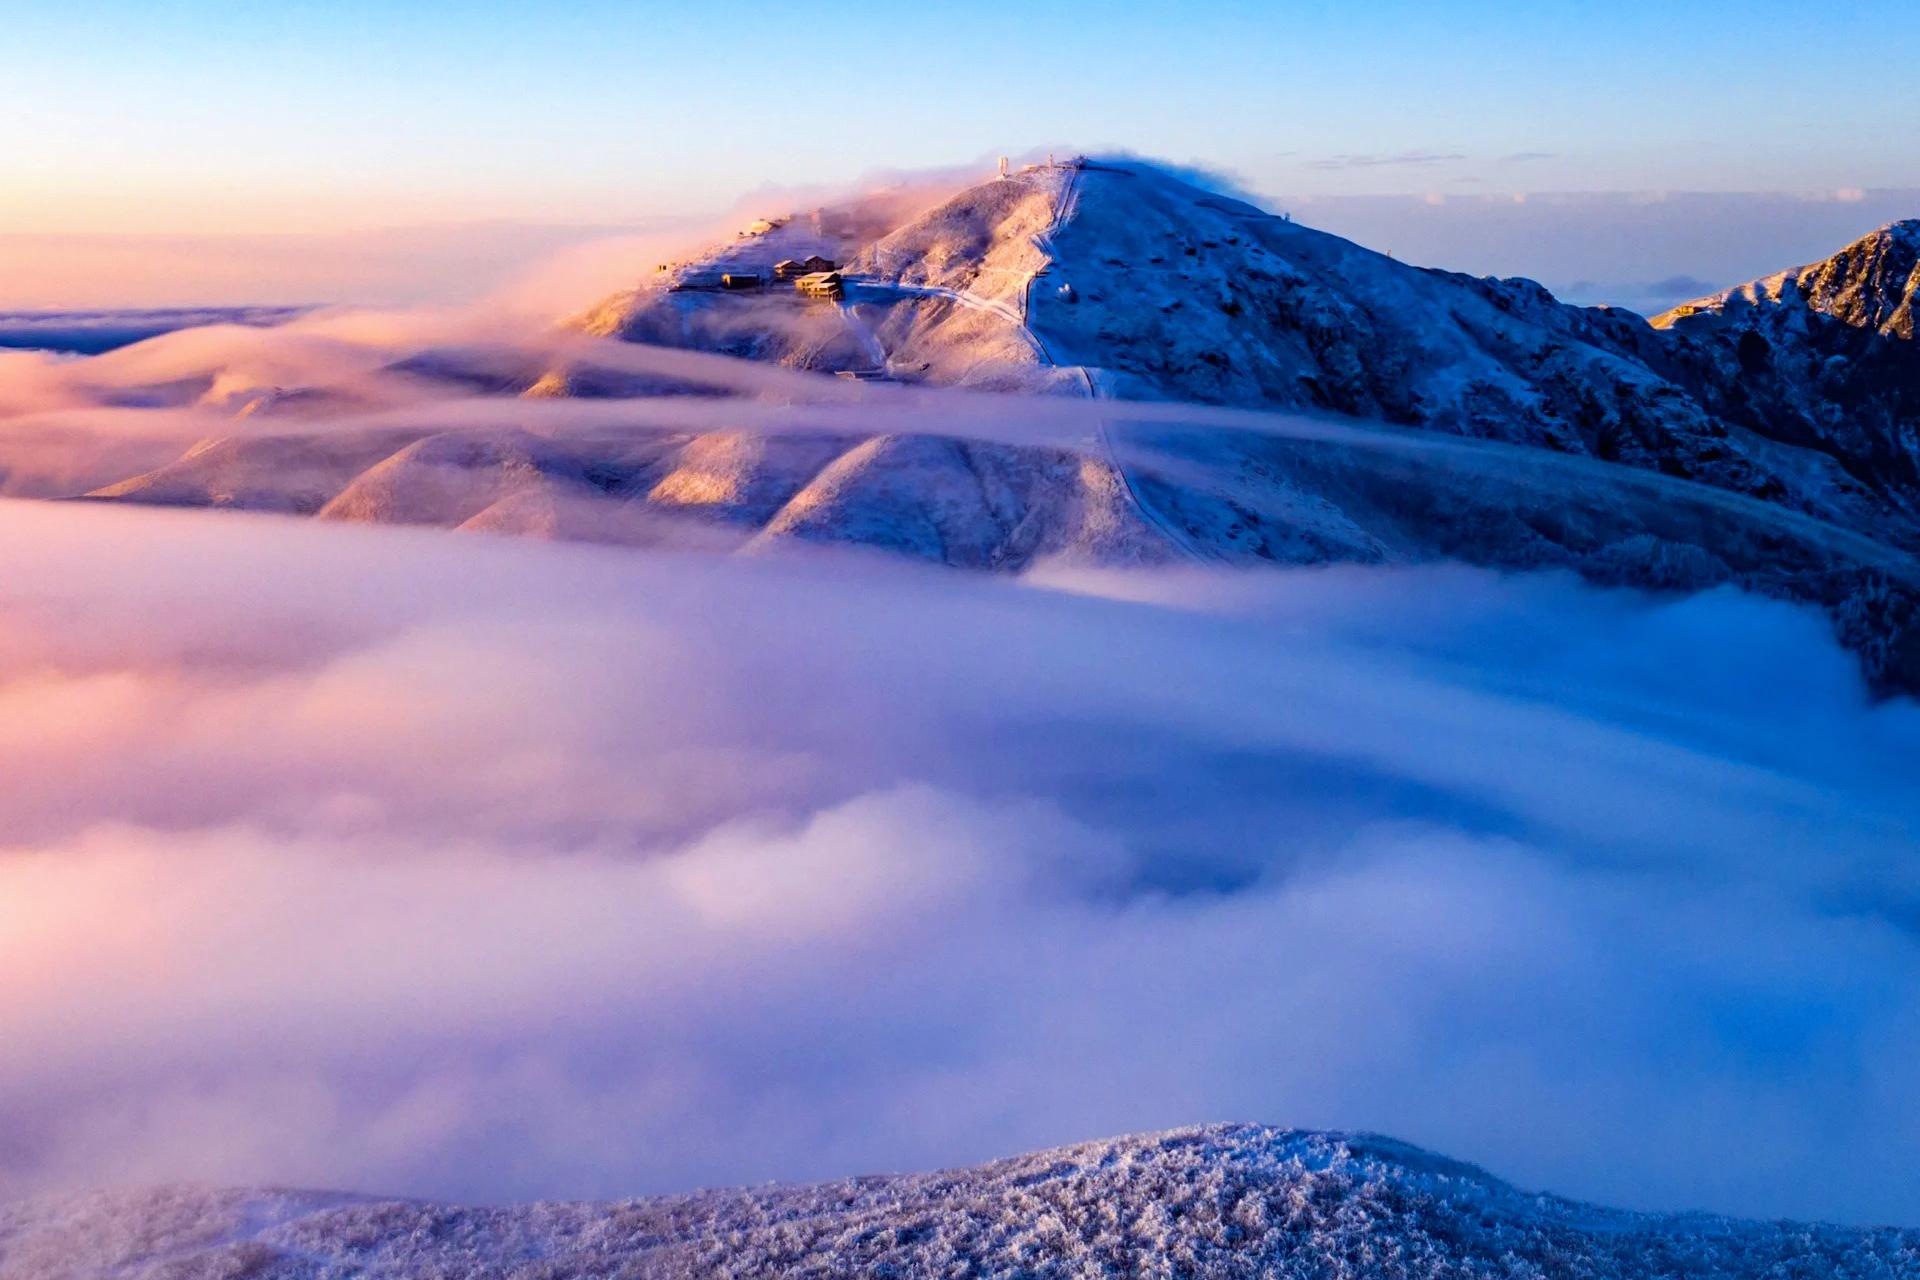 武功山:冬季最美的童话世界 武功山是一座四季皆美的山峰,但冬季的